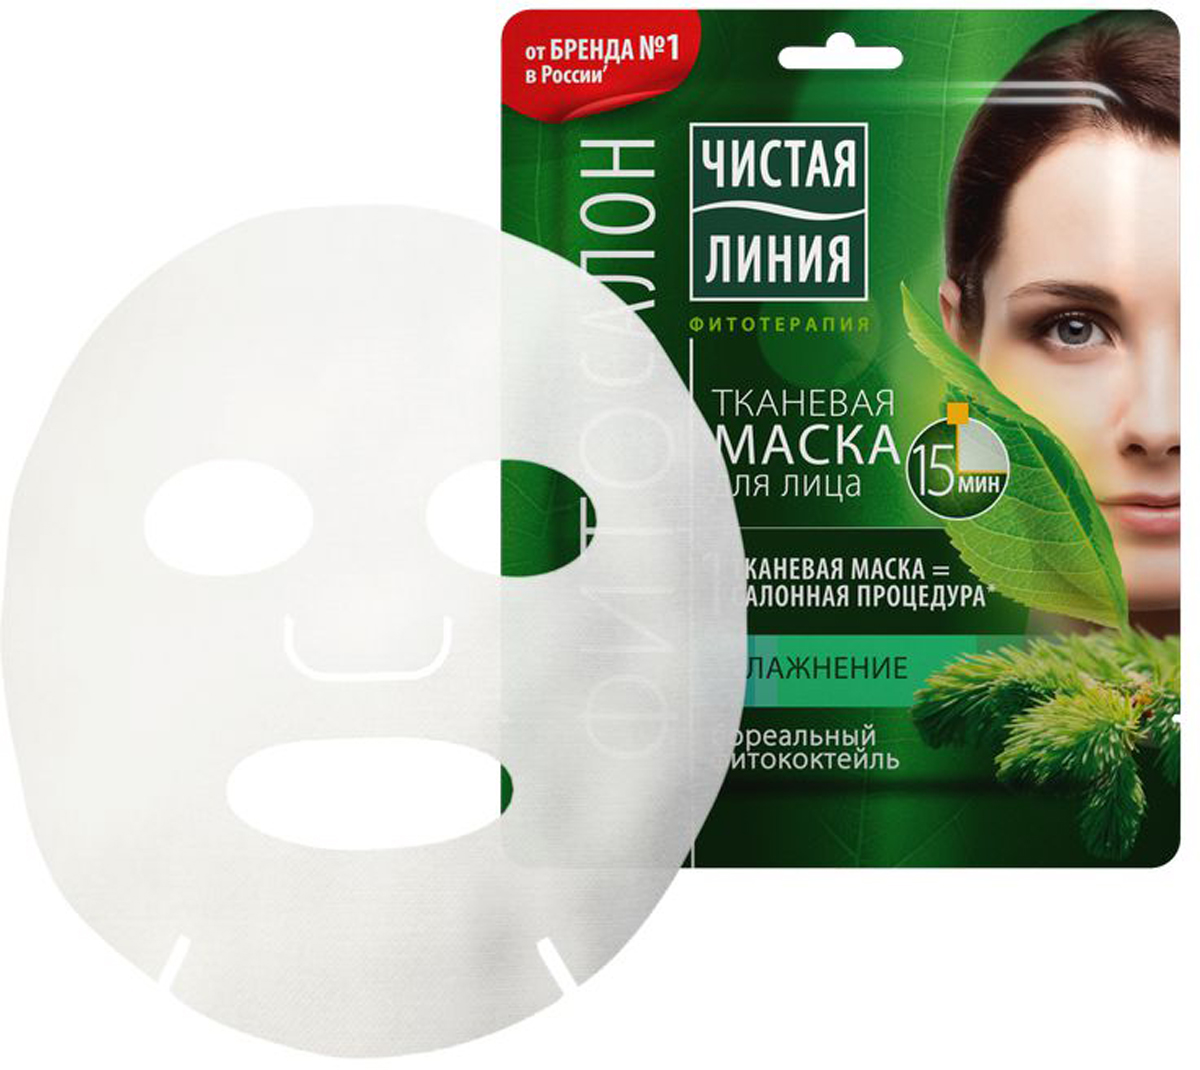 купить Чистая Линия Тканевая маска для лица Увлажняющая, 1 шт - заказ и доставка в Москве и Санкт-Петербурге